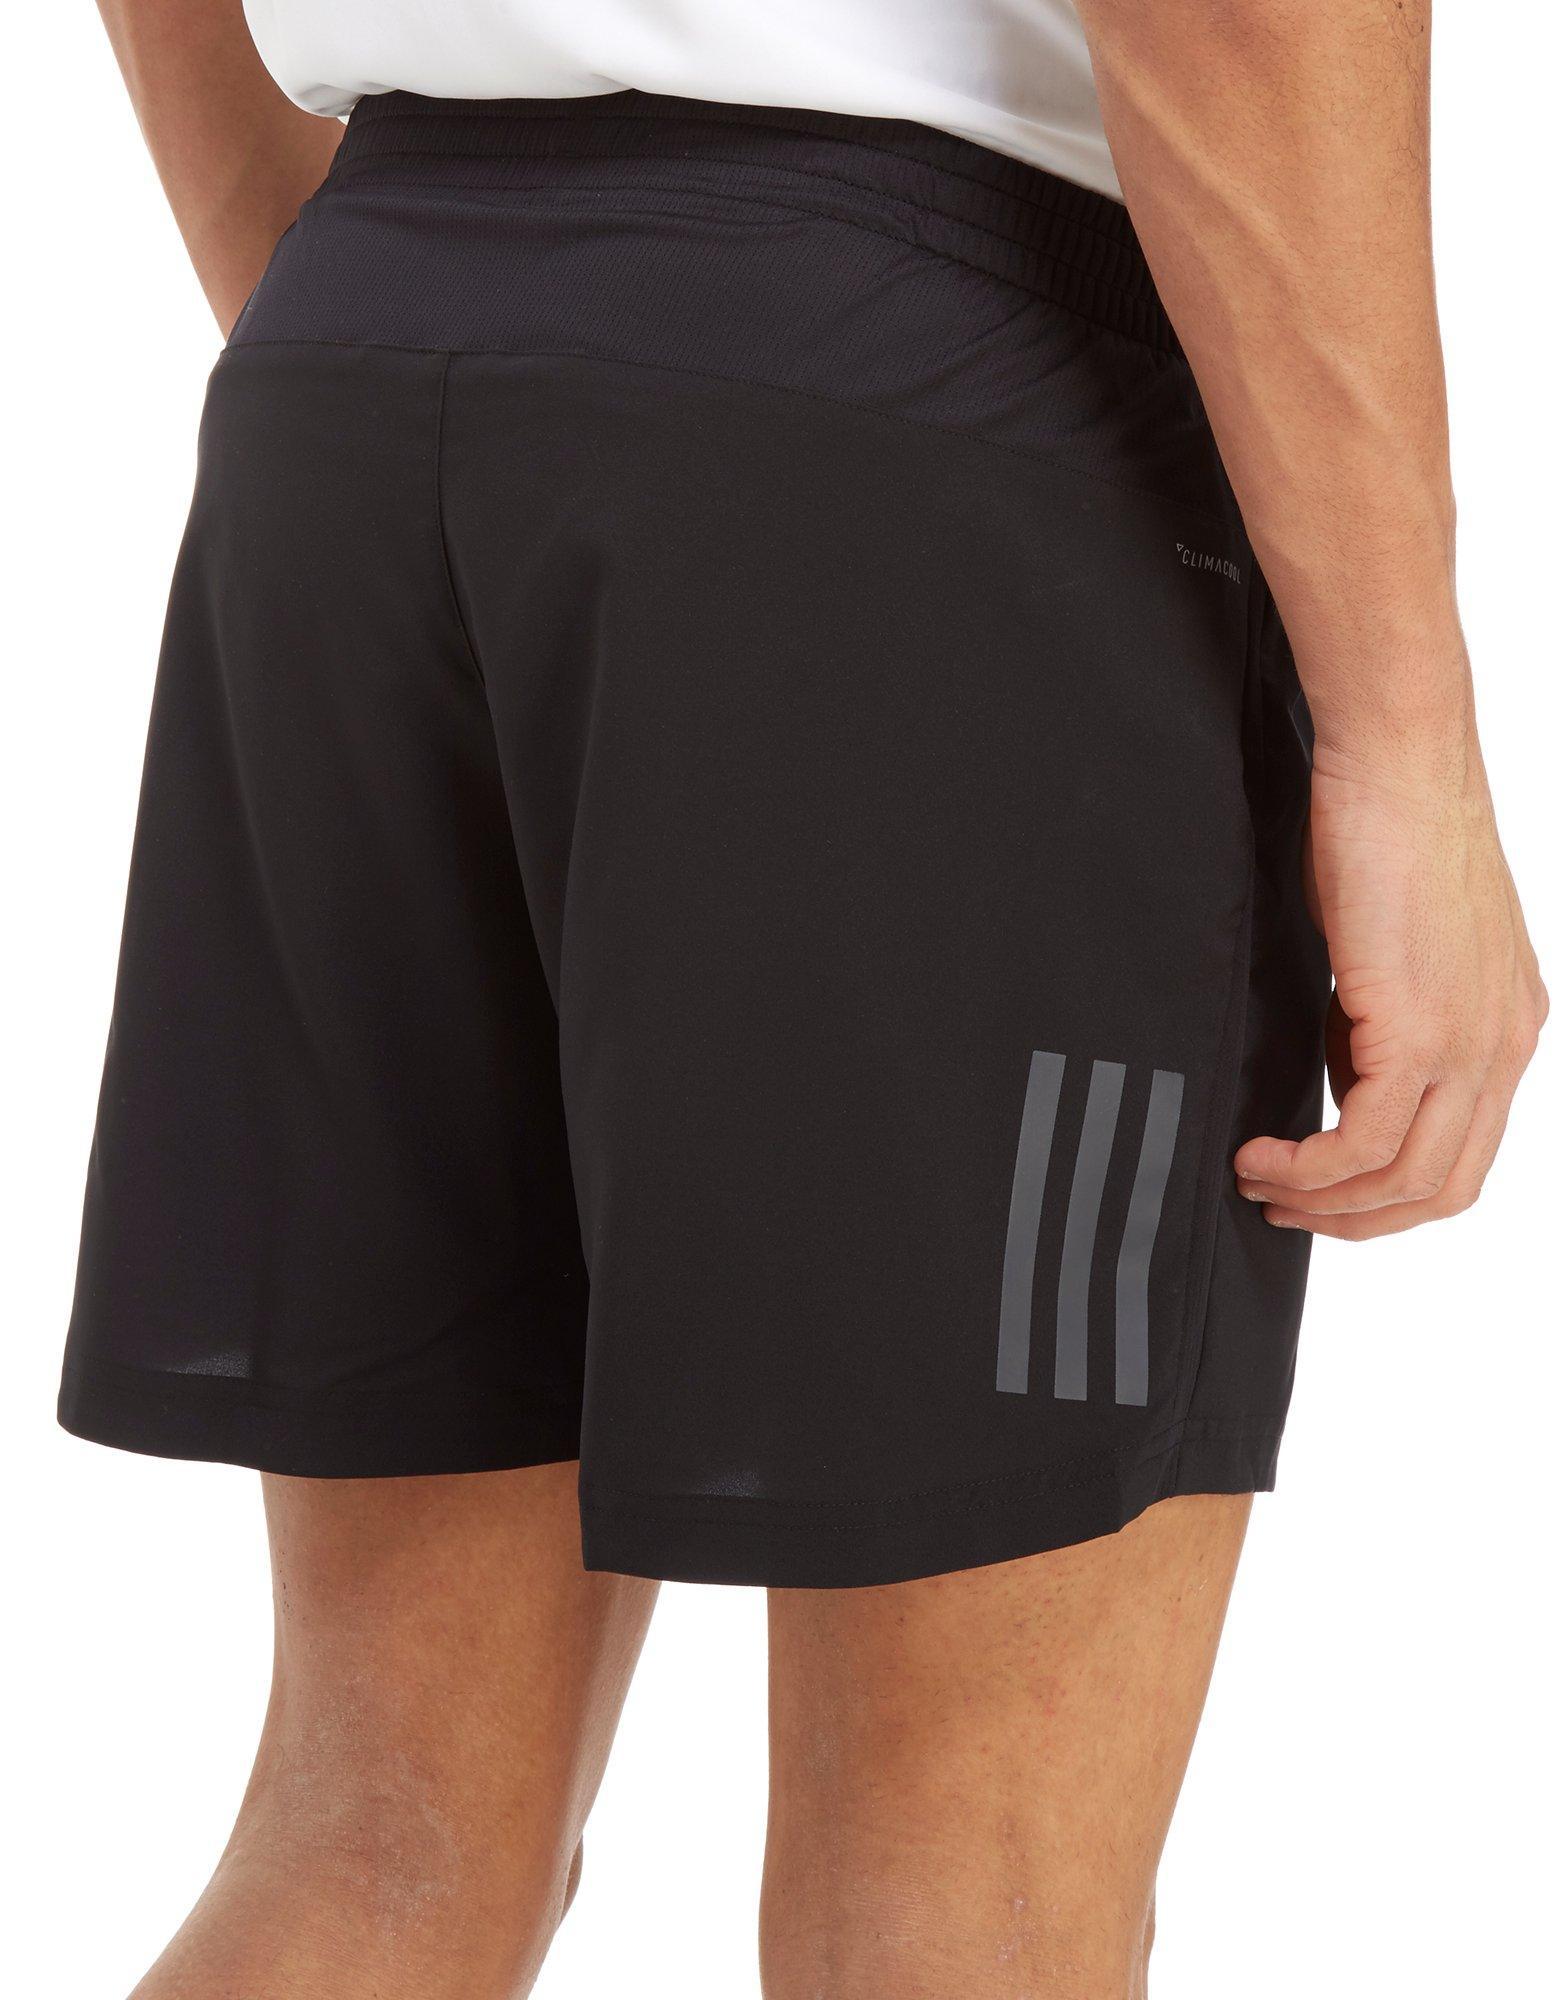 adidas 7 inch shorts mens